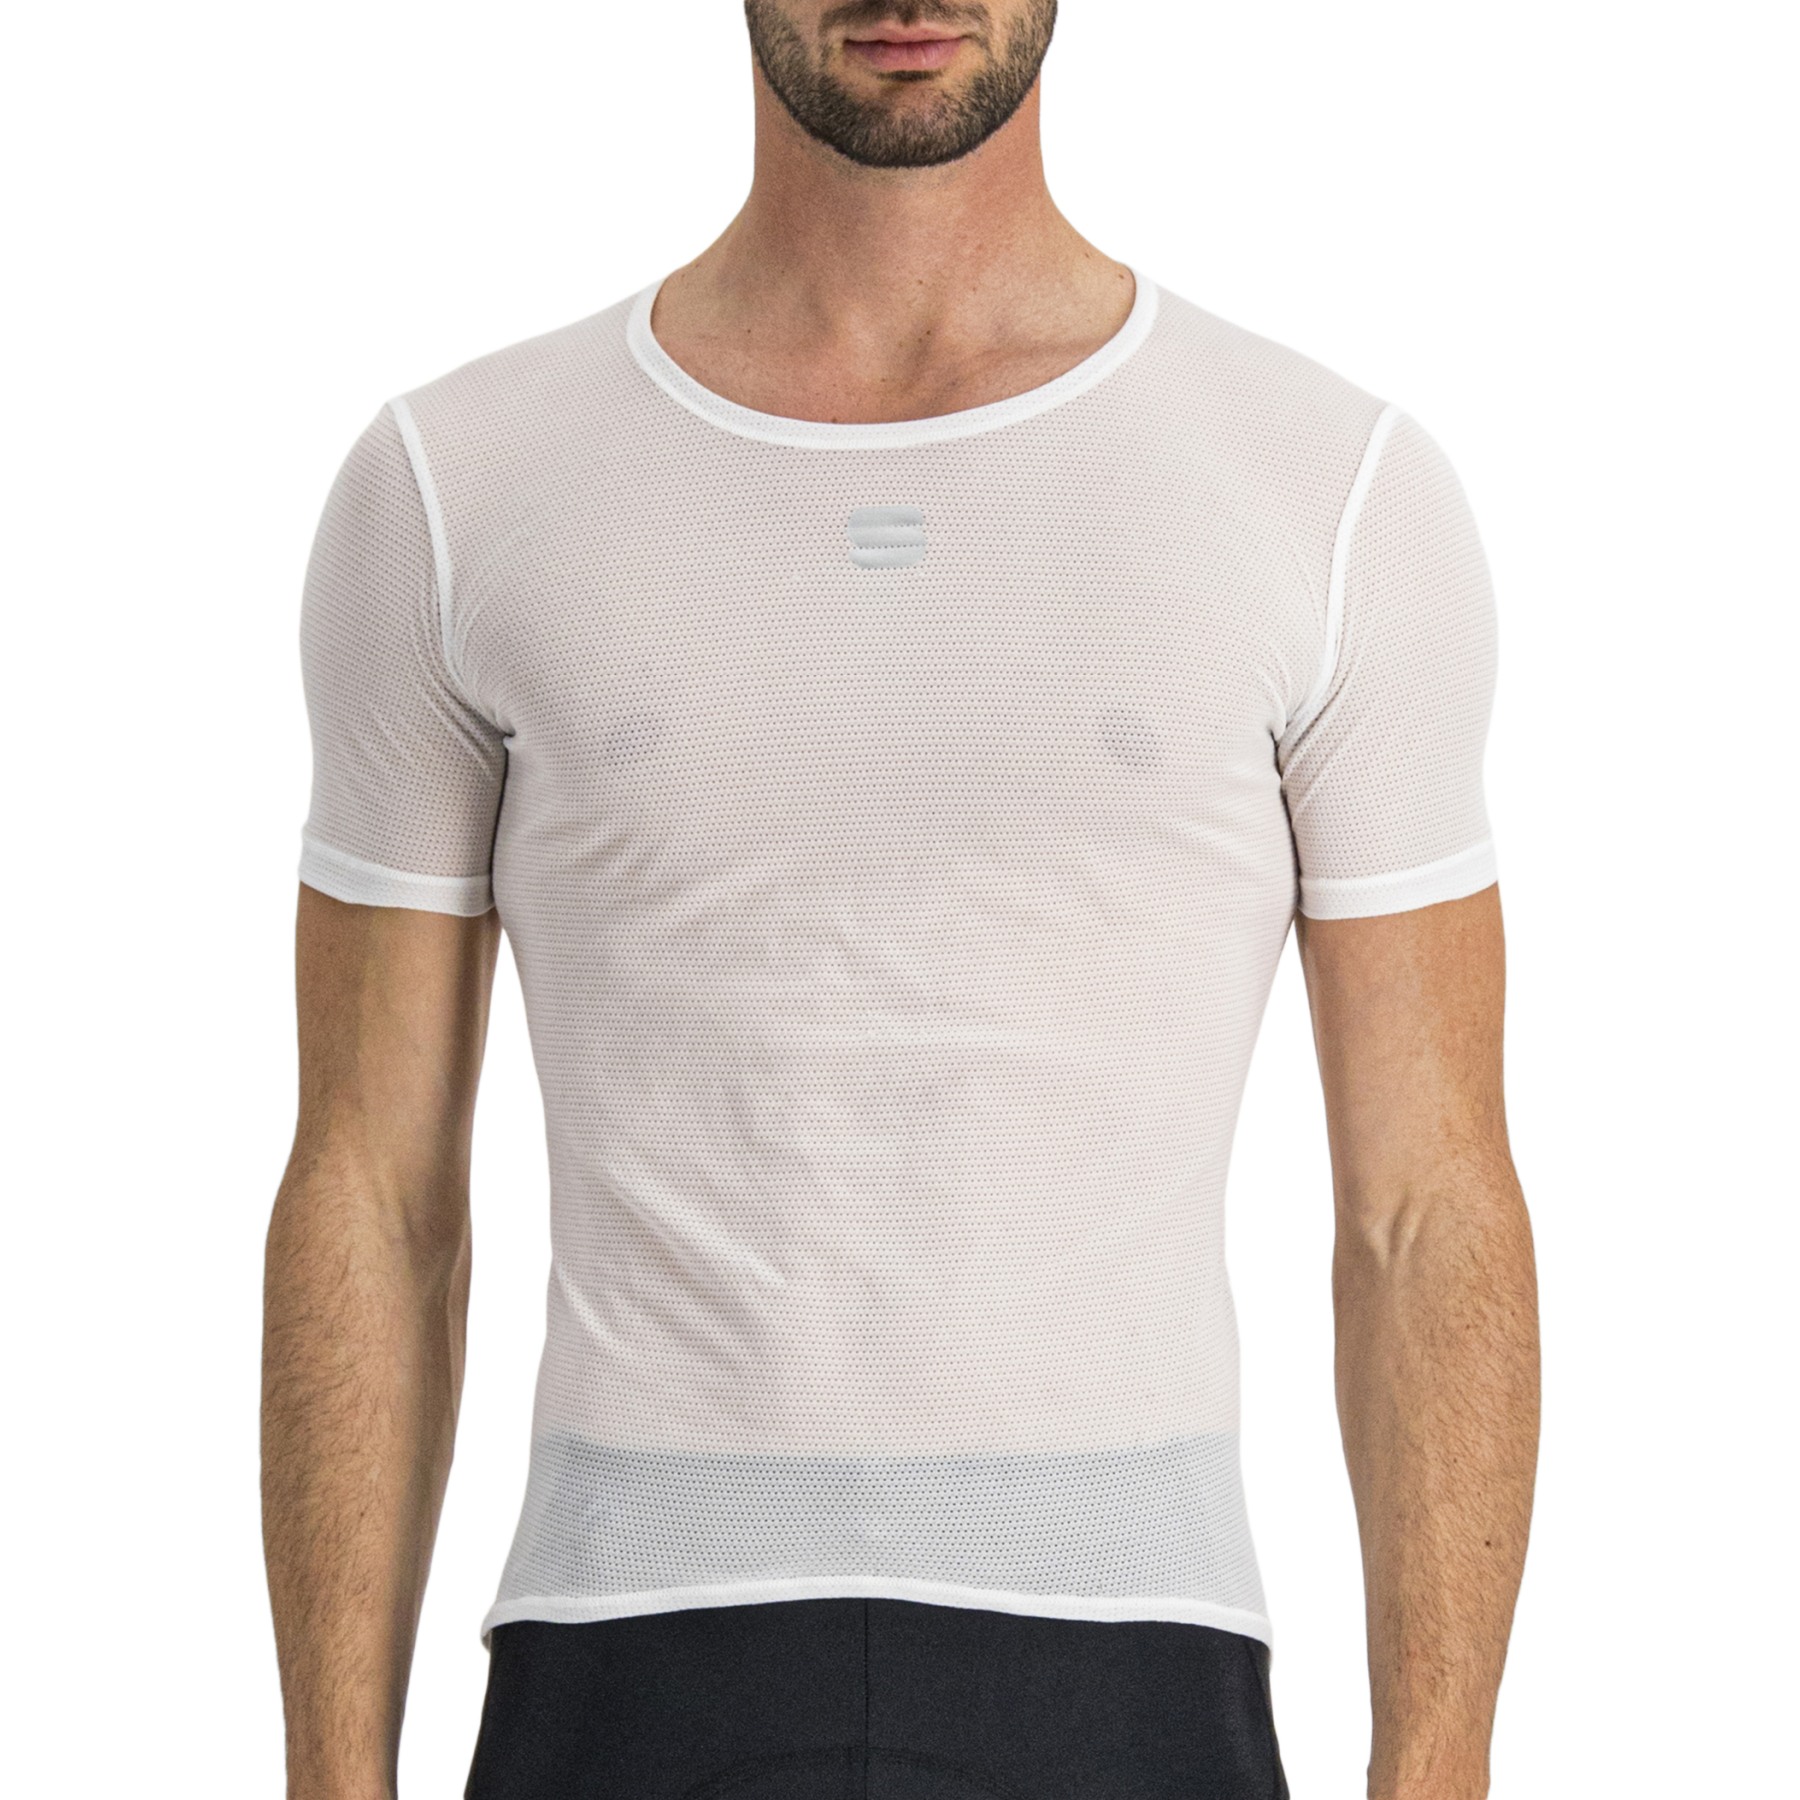 Produktbild von Sportful Thermodynamic Lite T-Shirt - 101 Weiß